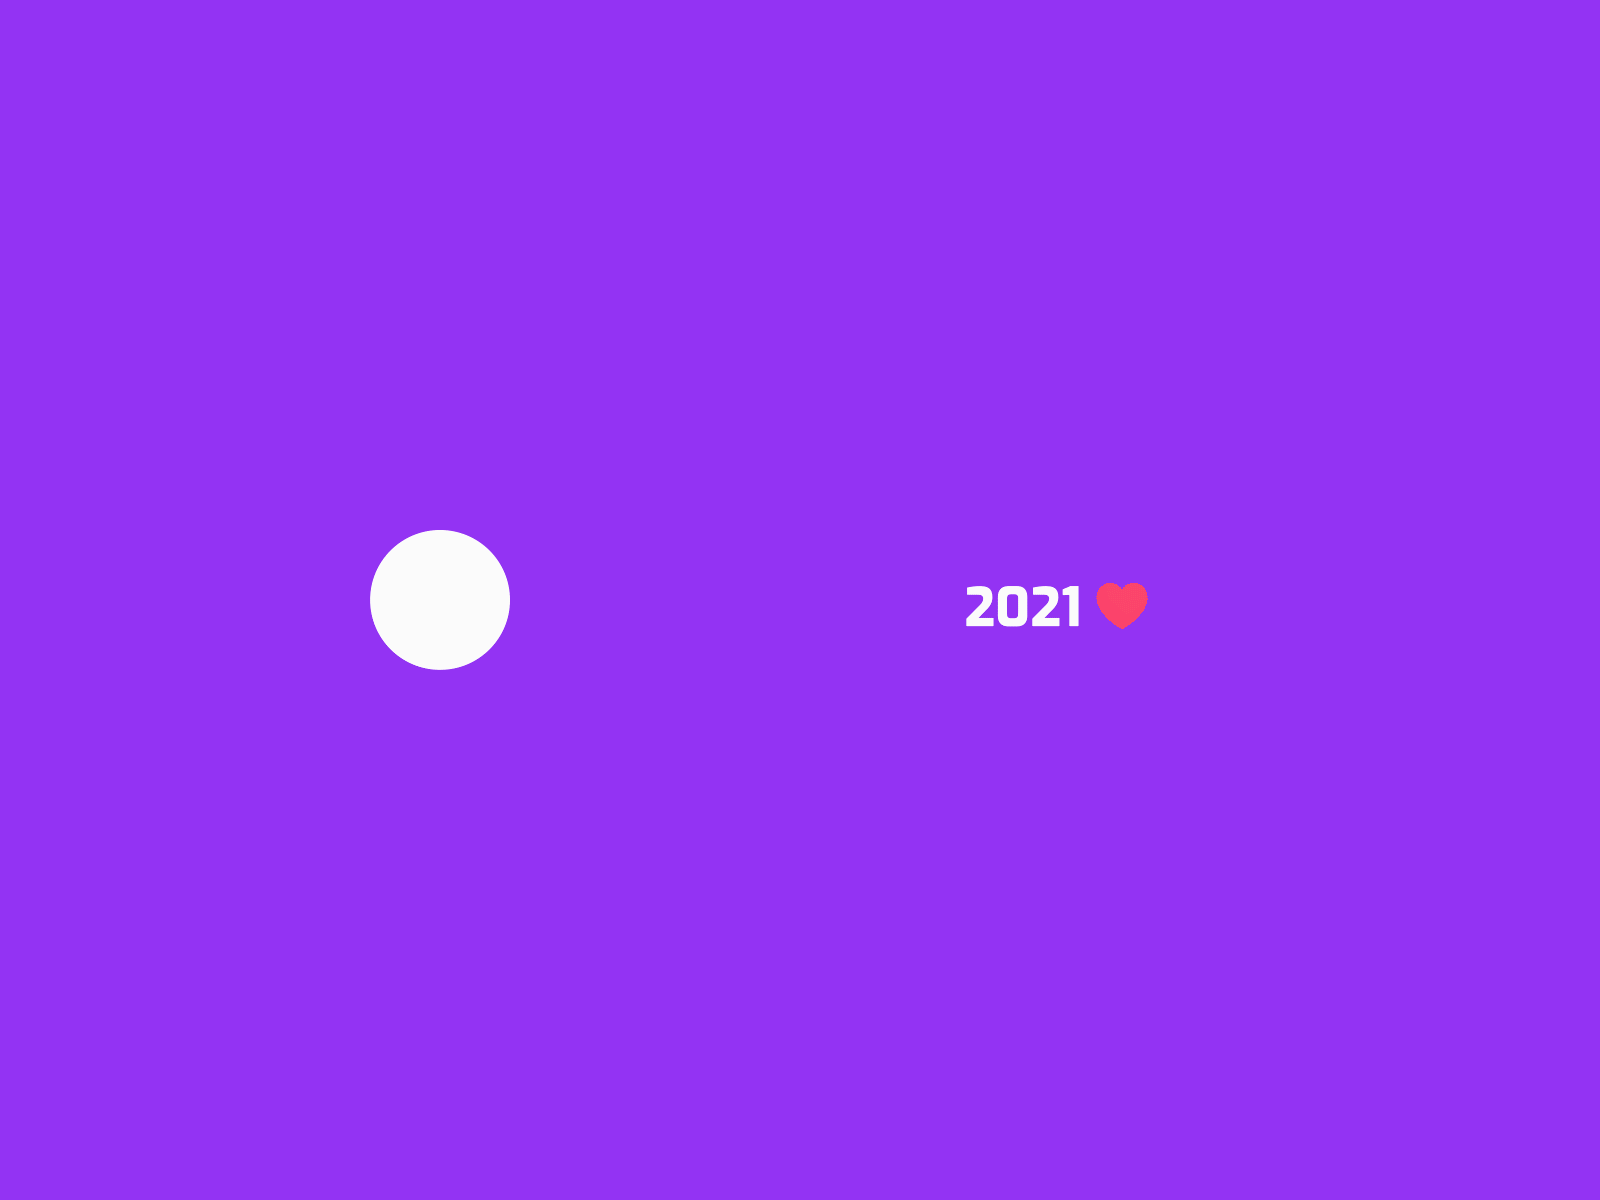 2020 - 2021